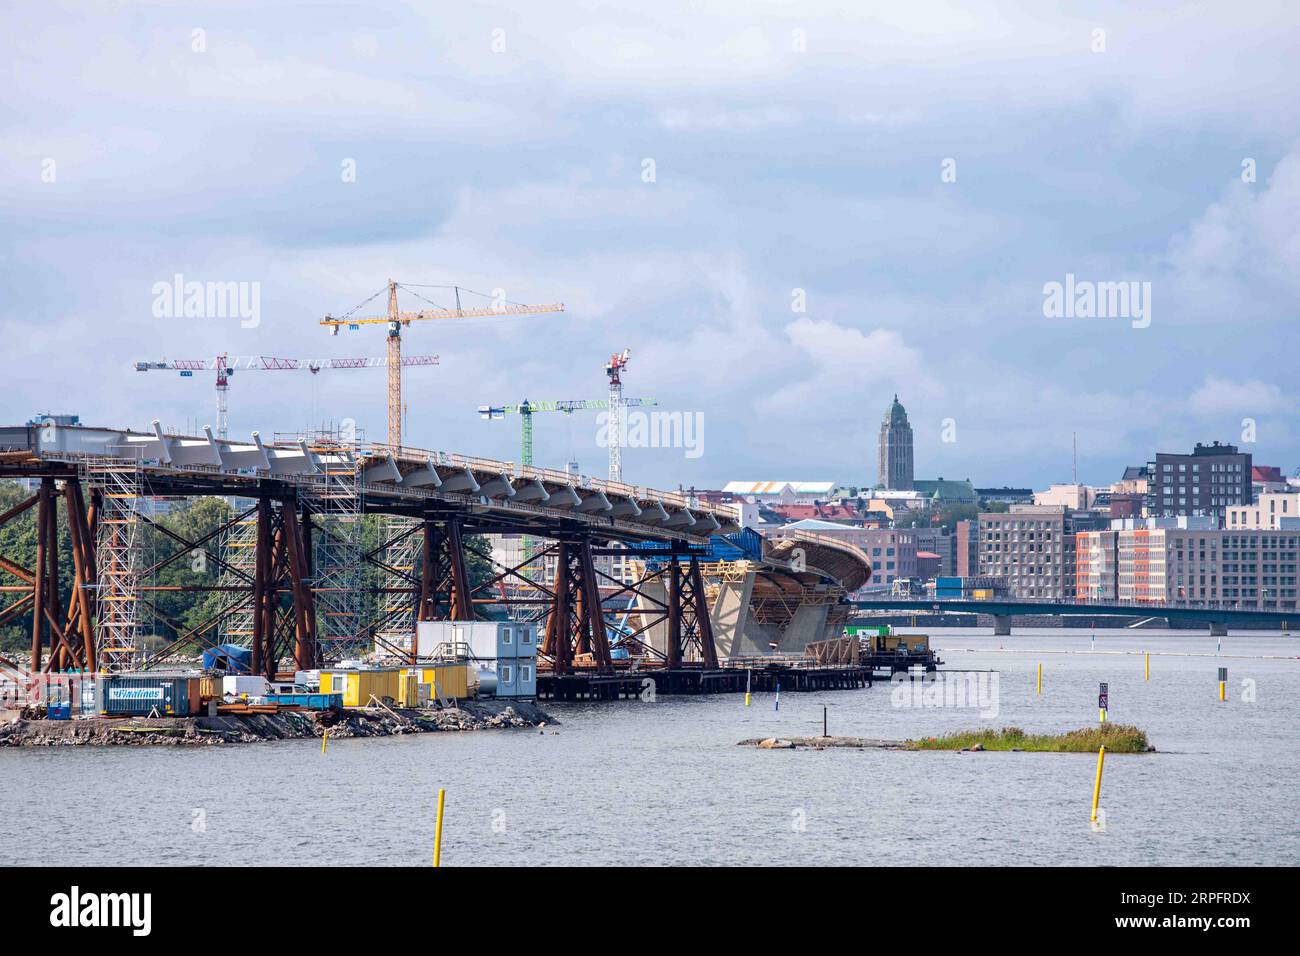 Kruunuvuorensilta o ponte Kruunuvuori in costruzione a Helsinki, Finlandia Foto Stock